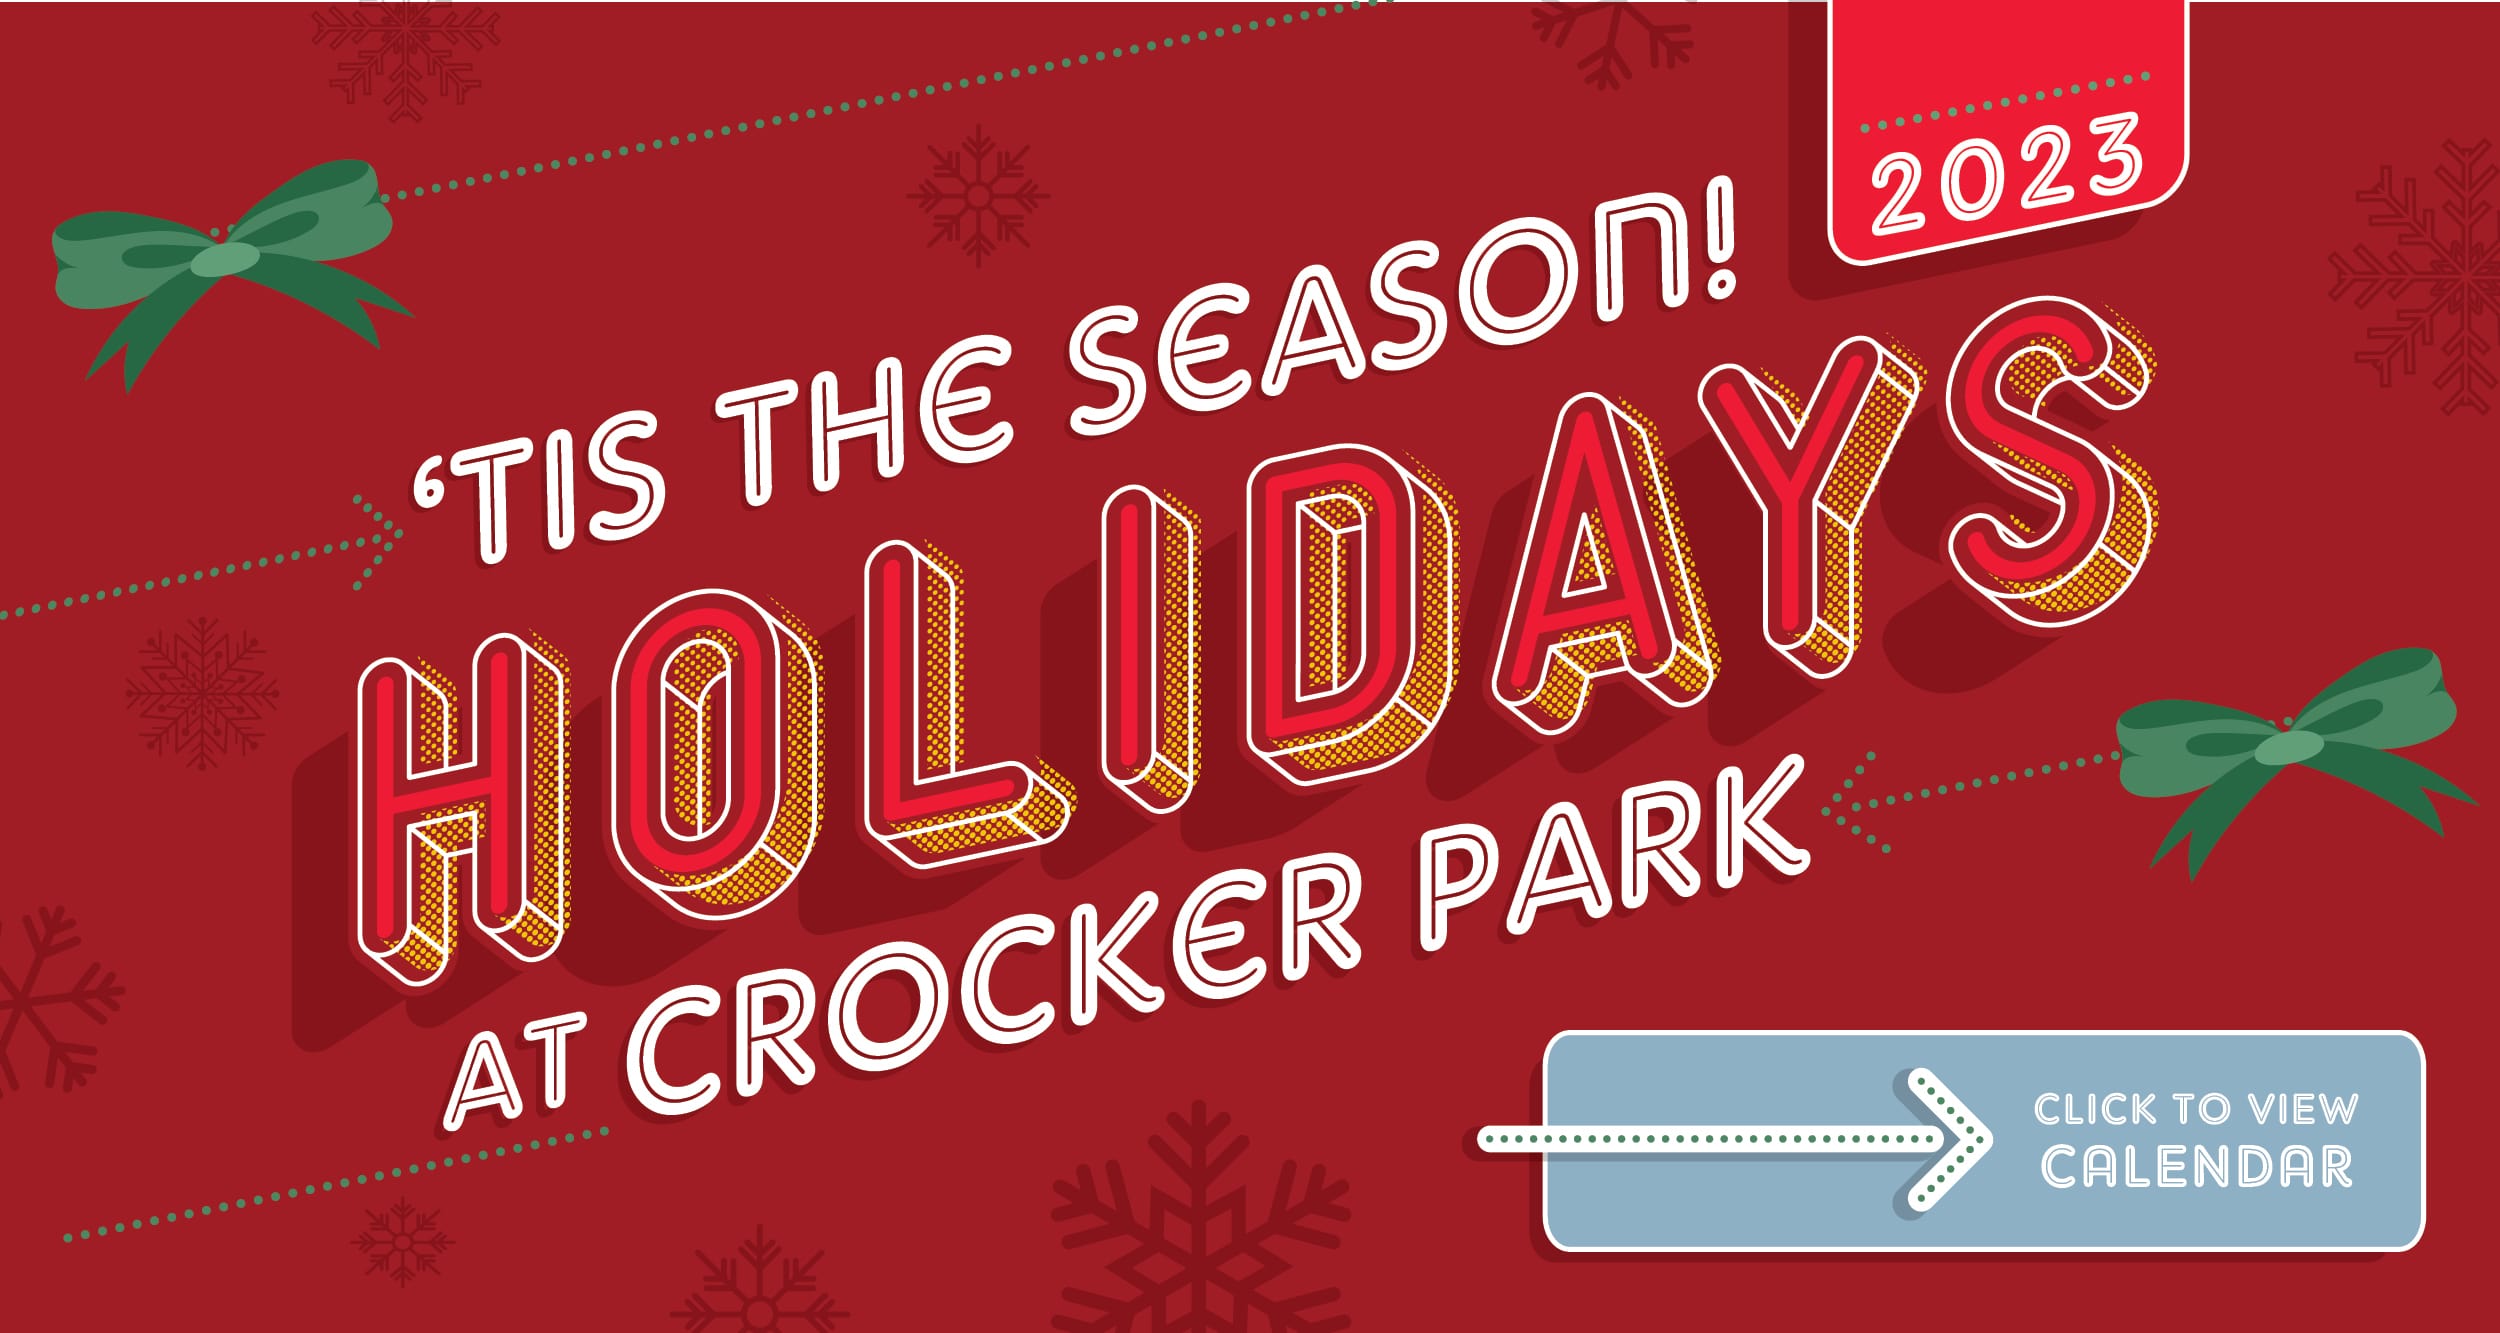 Holidays at Crocker Park